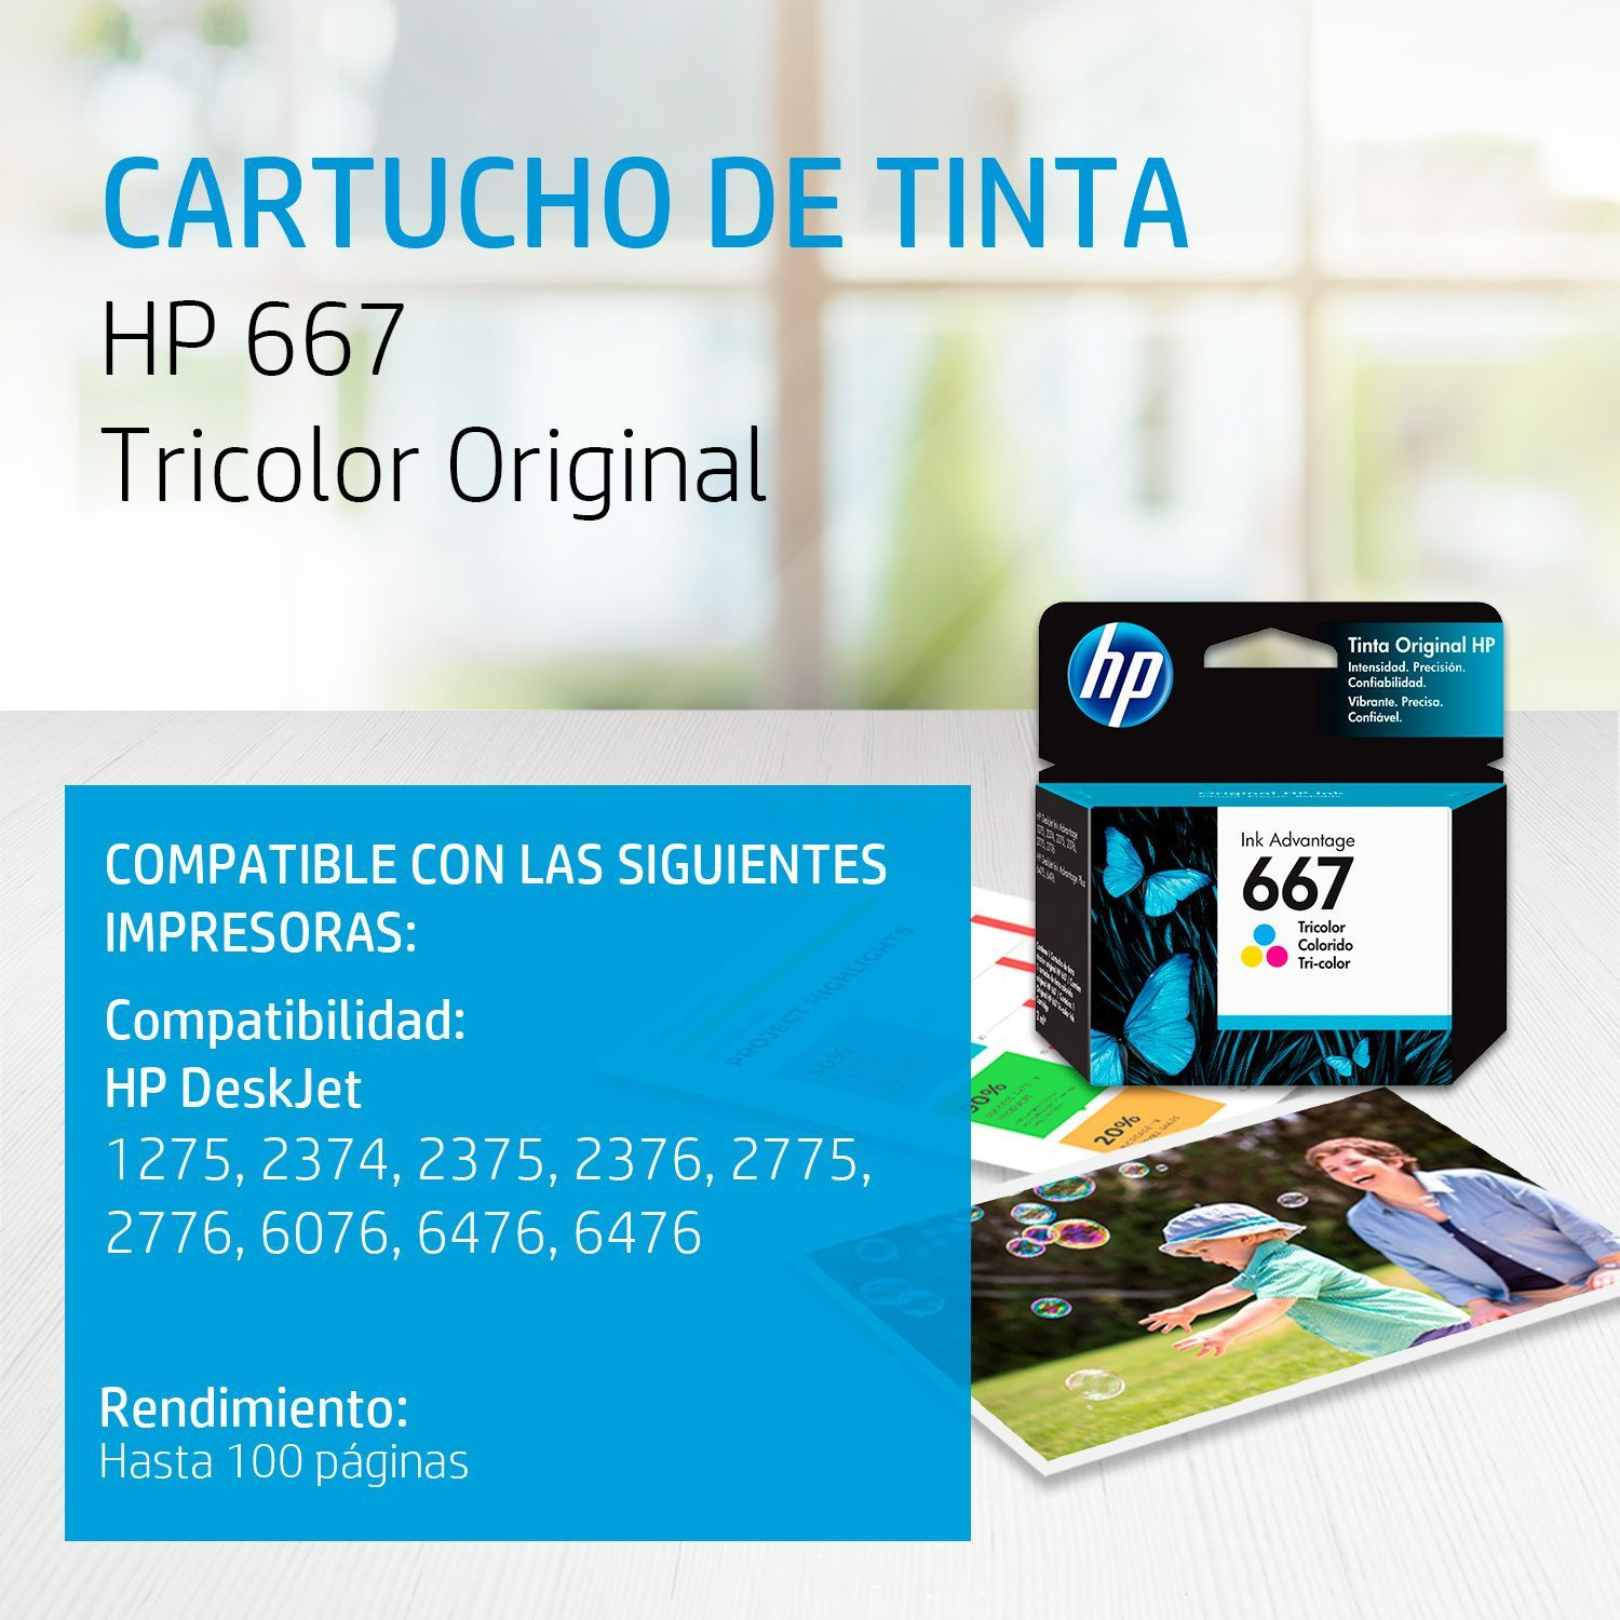 Cartucho de tinta HP 667 Tricolor (3YM78AL) DeskJet 2775/4175 100 Pag.